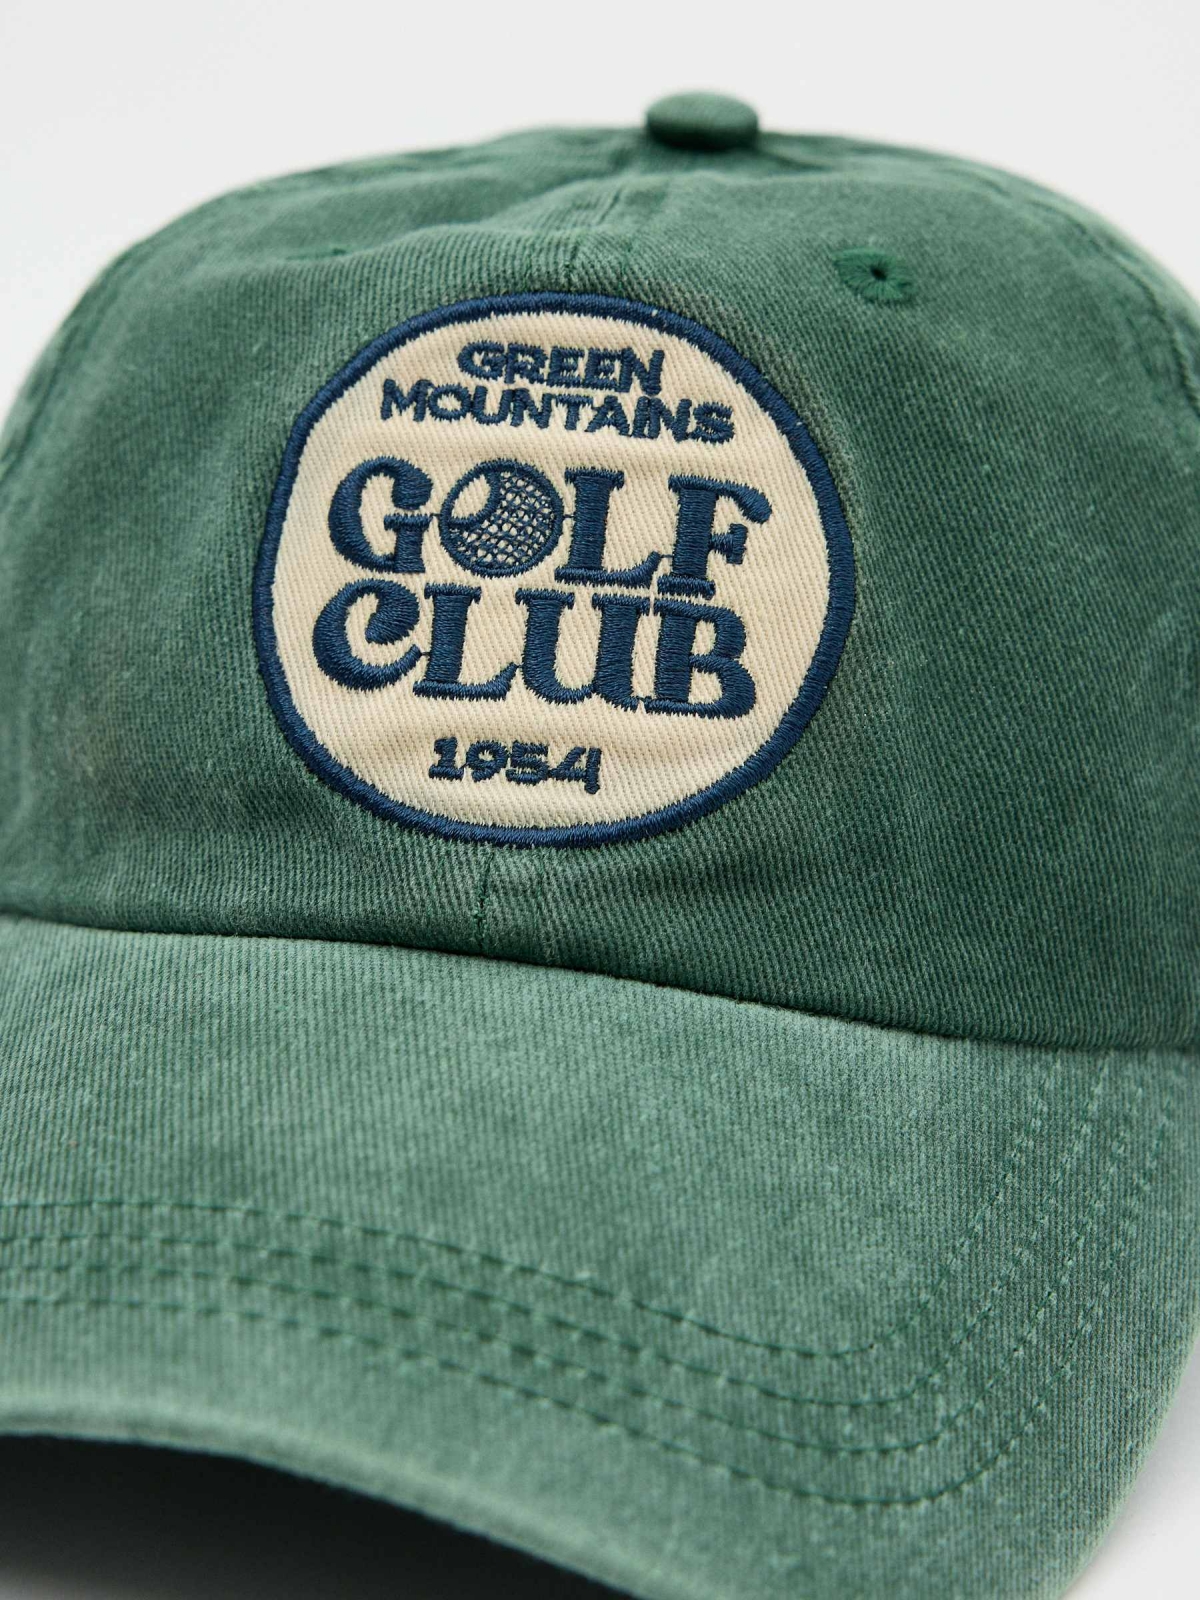 Gorra baseball logo verde vista detalle